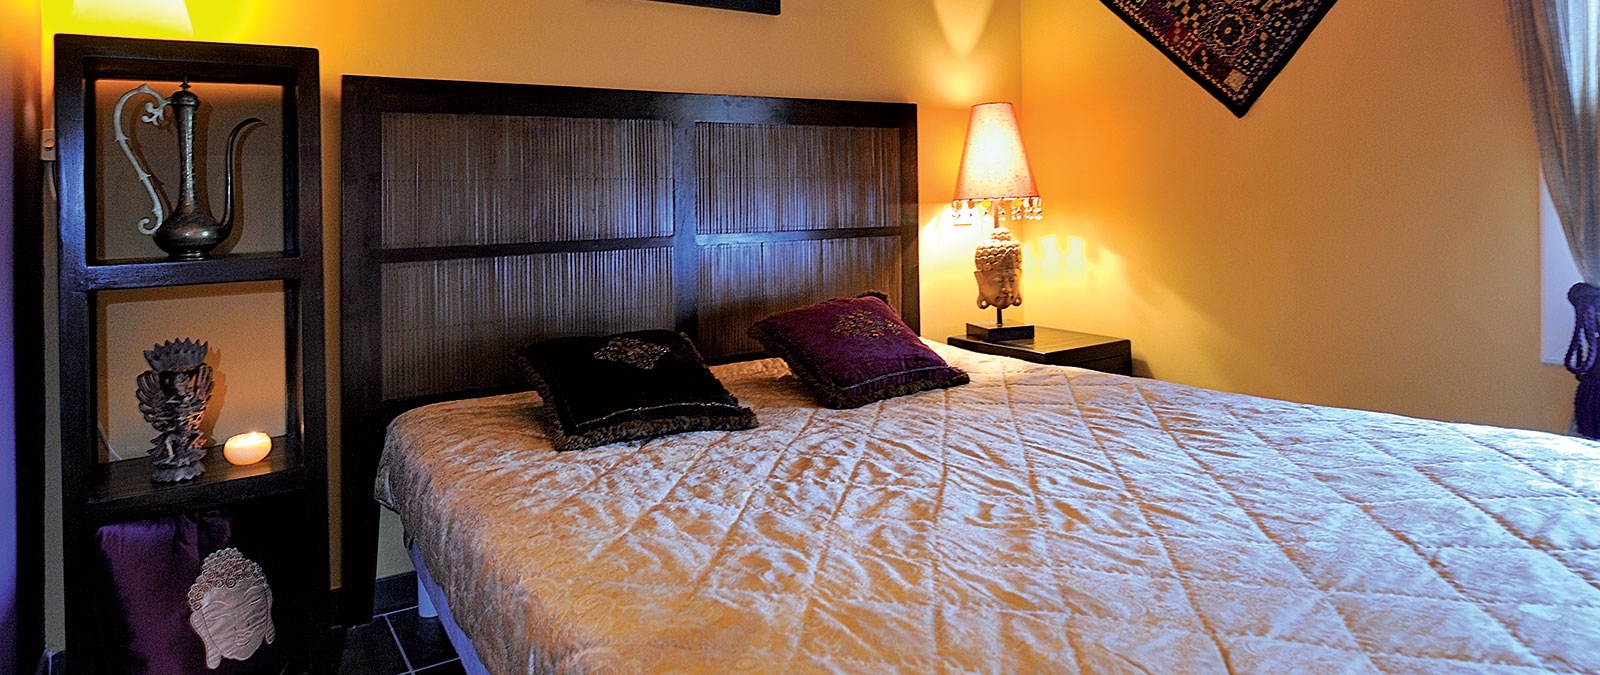 Chambre avec lit double Location studio naturiste Jaïpur